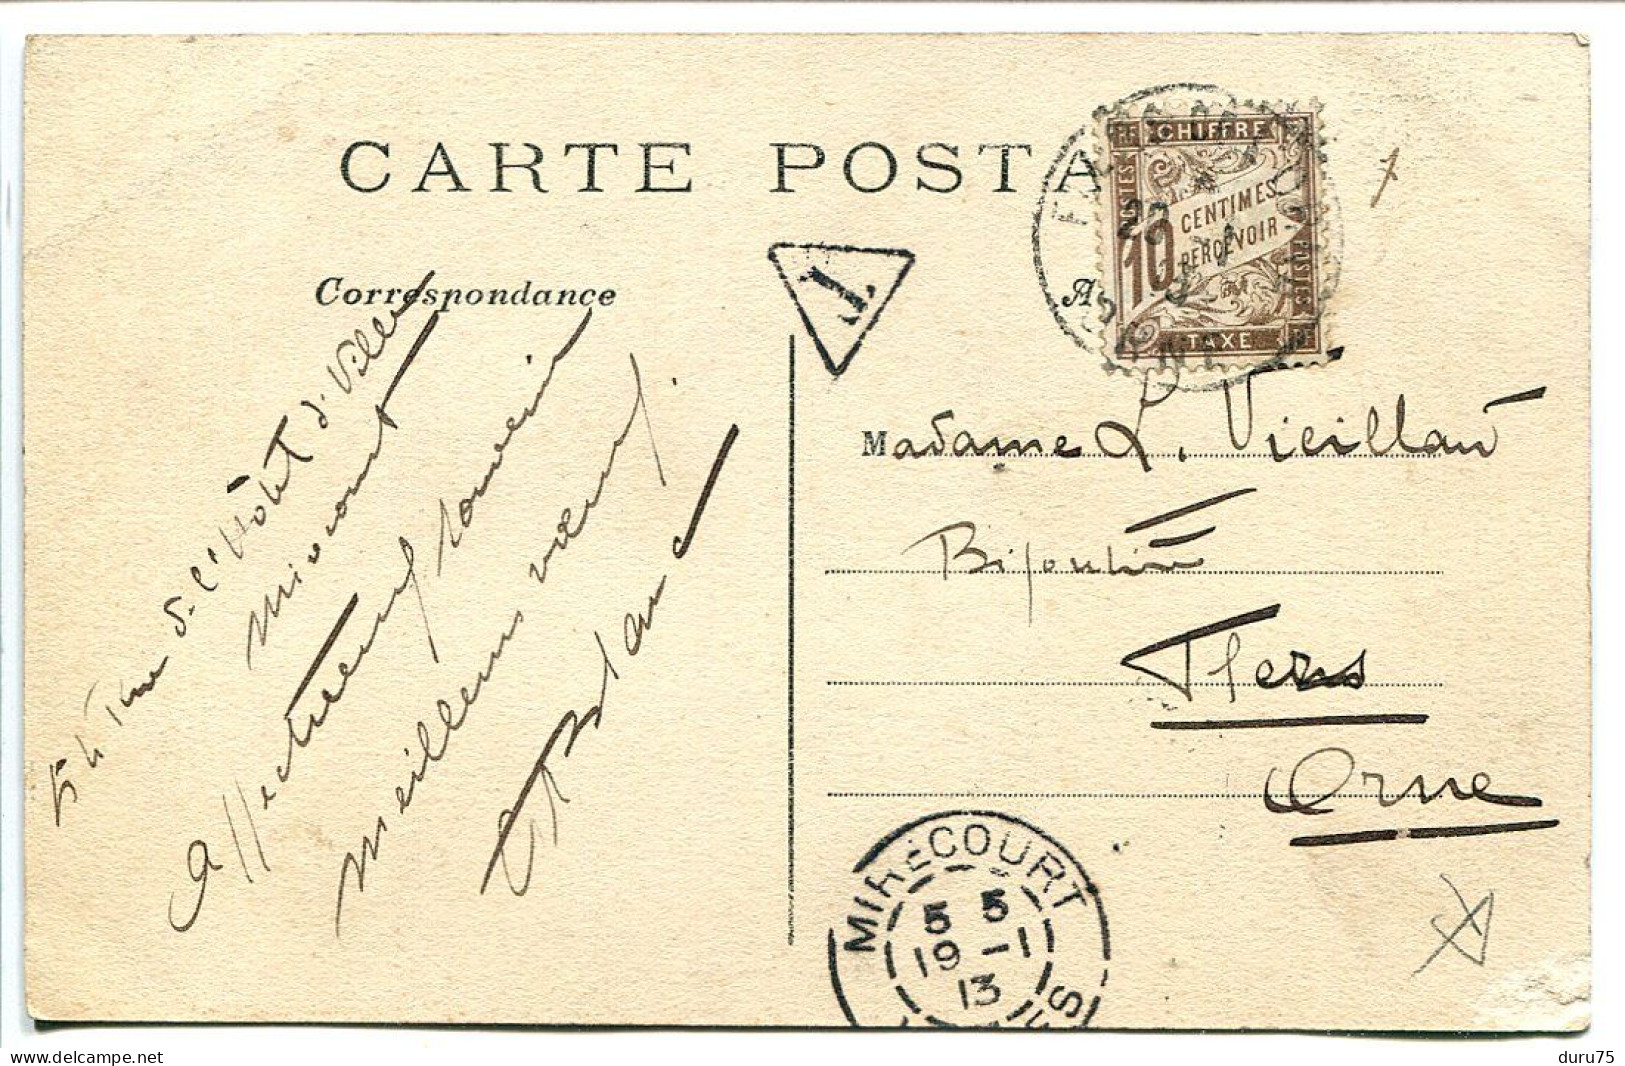 CPA Voyagé 1913 * MIRECOURT Rue De L'Hôtel De Ville ( Très Animée Commerce Tabac Journaux ) Timbre Taxe - Mirecourt